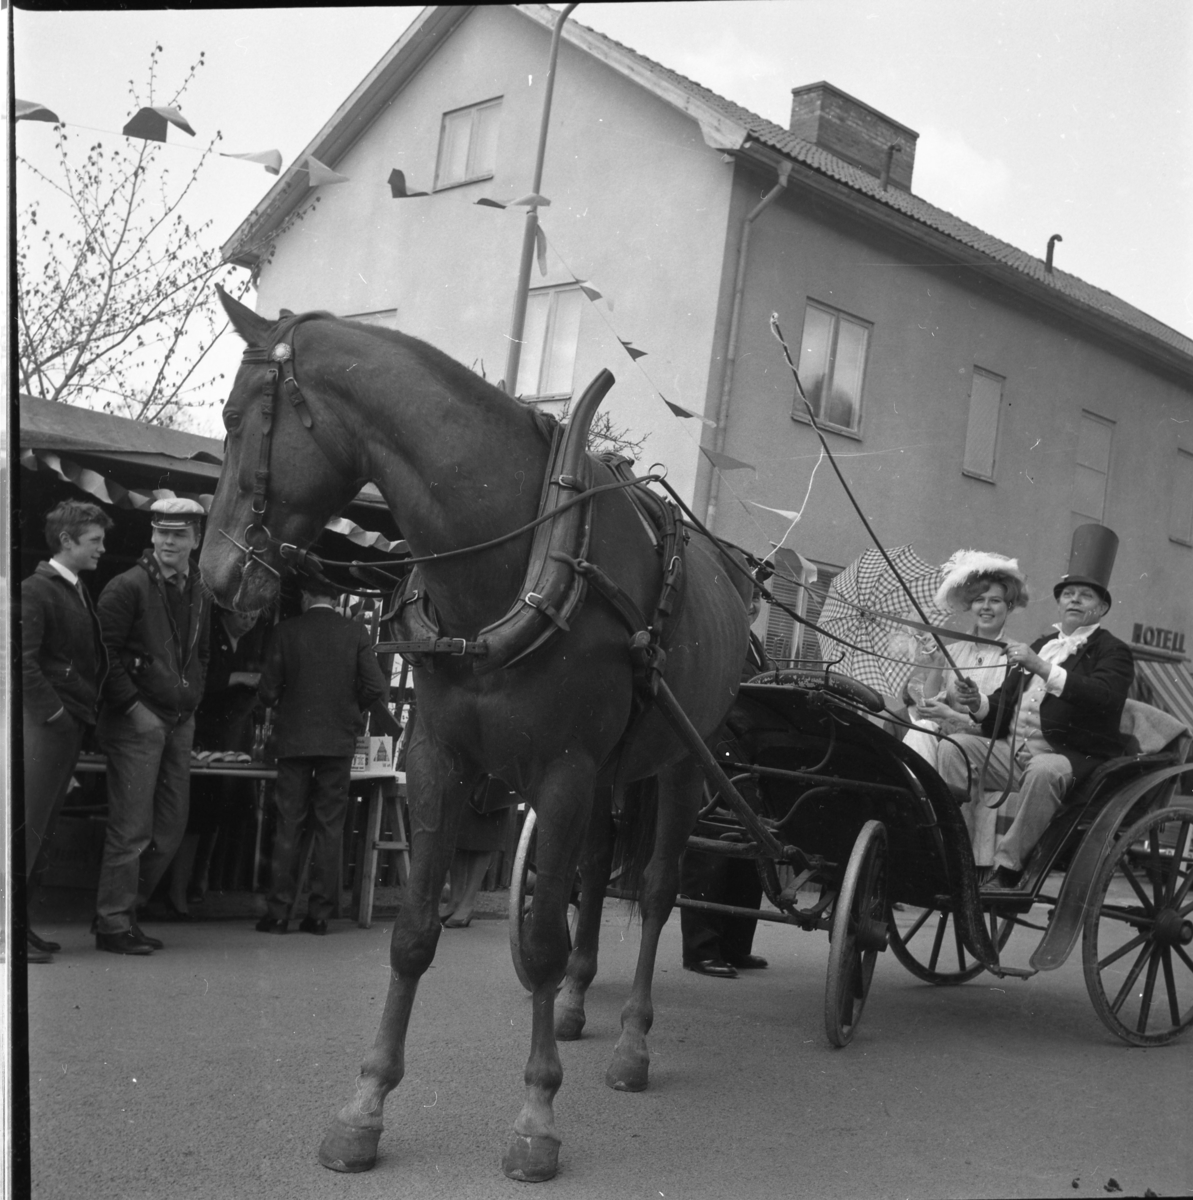 Lions vårmarknad 1964. En högtidsklädd Lauritz Madsen med extra hög hatt sitter i hästvagn och håller tömmarna. Intill sitter dottern Anne-Lise Madsen med hatt och parasoll. På Sjögatan vid korsningen mot Ribbagårdsgränd. På Sjögatan 29 var det då ett Hotell.